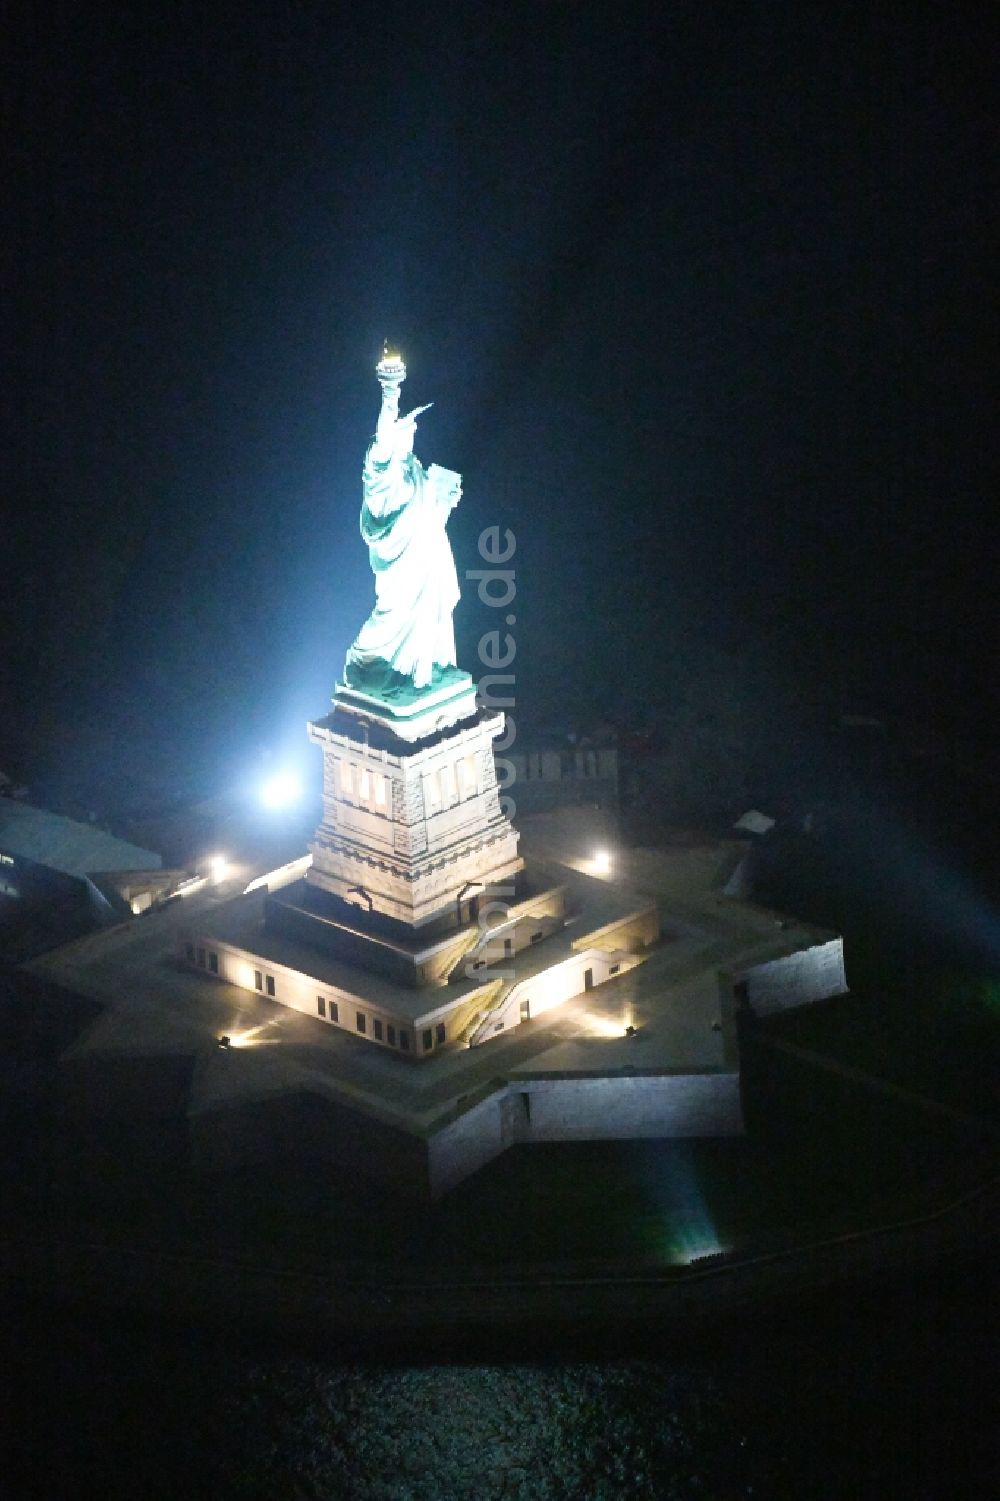 New York bei Nacht aus der Vogelperspektive: Nachtluftbild Geschichts- Denkmal Freiheitsstatue - Statue of Liberty National Monument in New York in USA